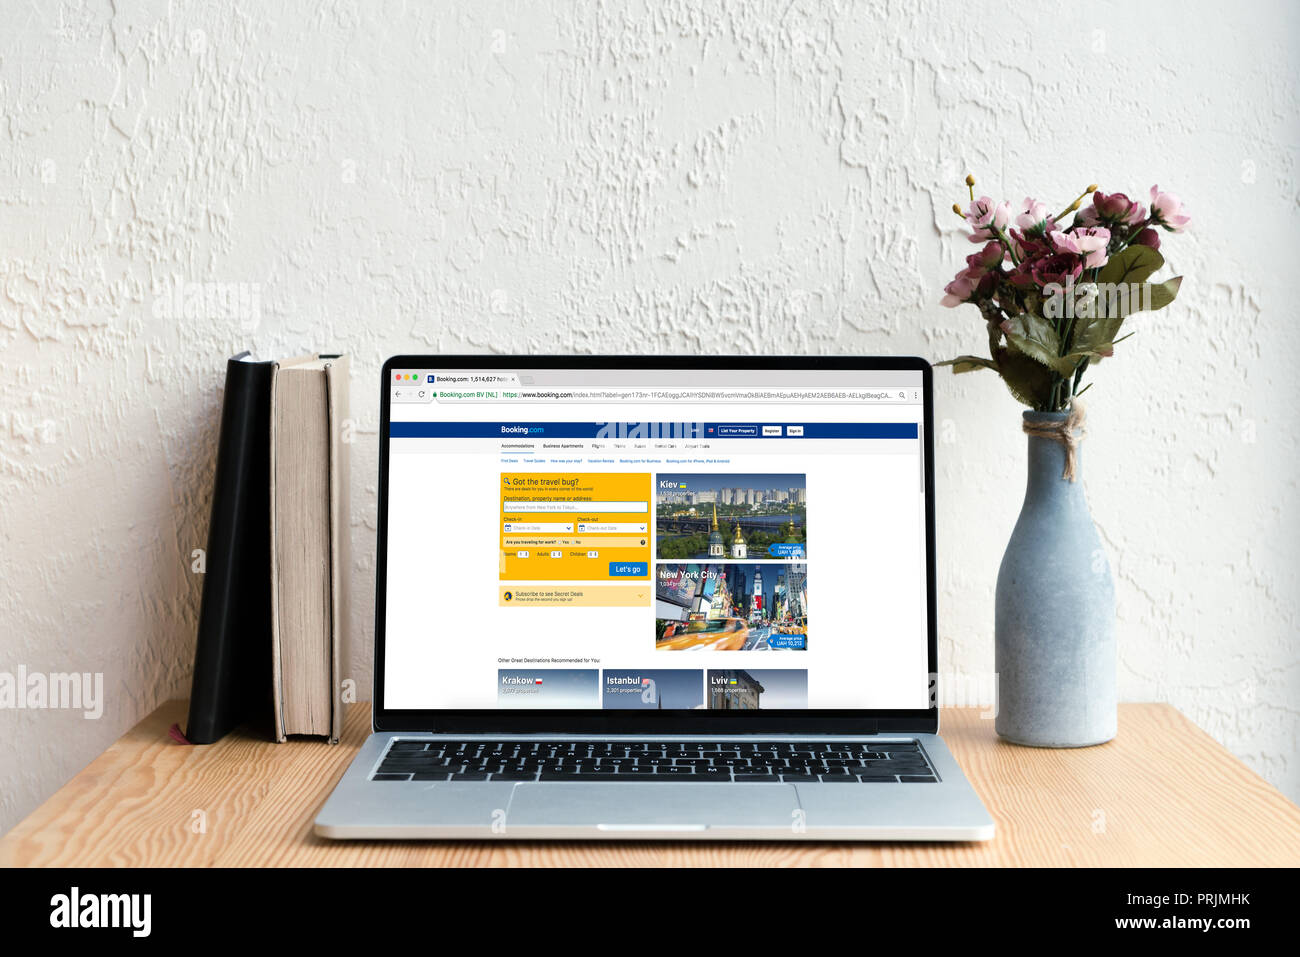 Laptop mit Webseite auf dem Bildschirm, Bücher und Blumen in Vase auf hölzernen Tisch Stockfoto